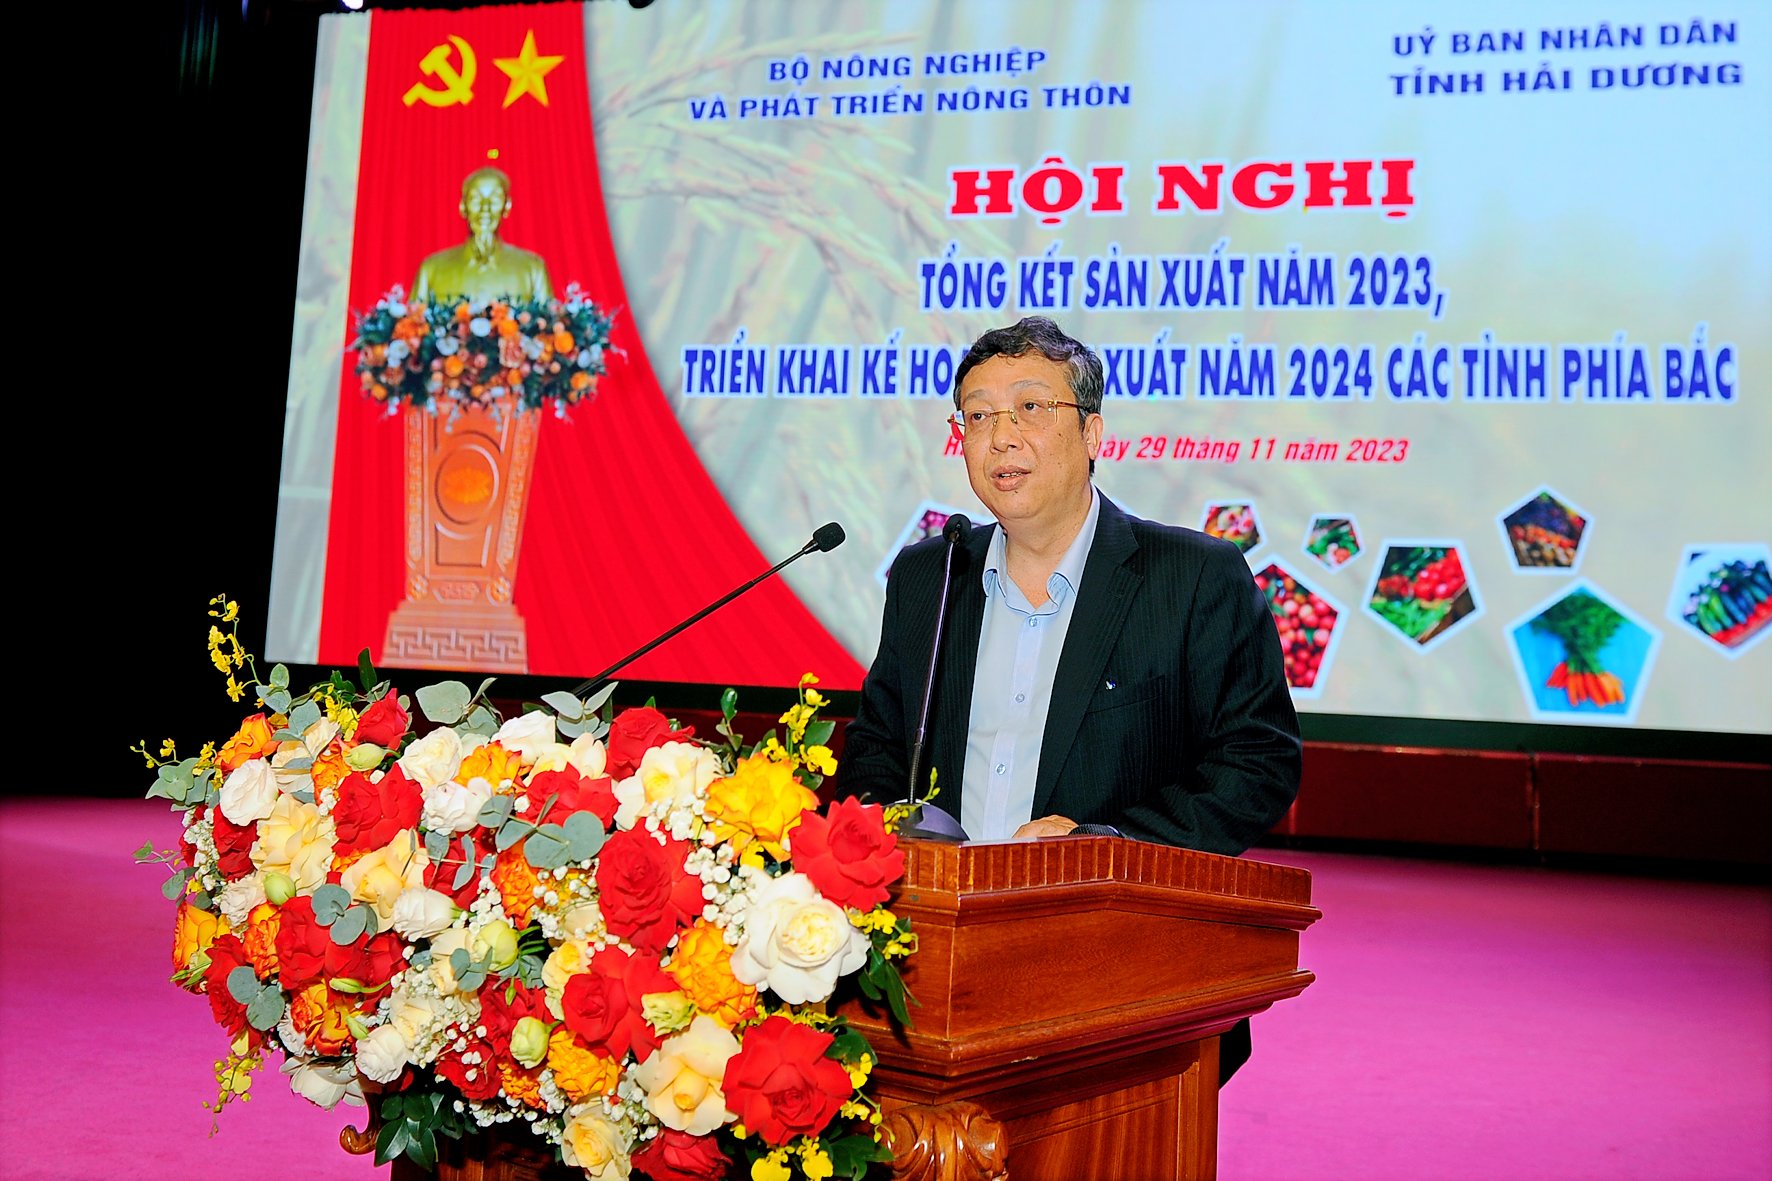 Thứ trưởng Bộ Nông nghiệp và Phát triển nông thôn Hoàng Trung phát biểu kết luận hội nghị